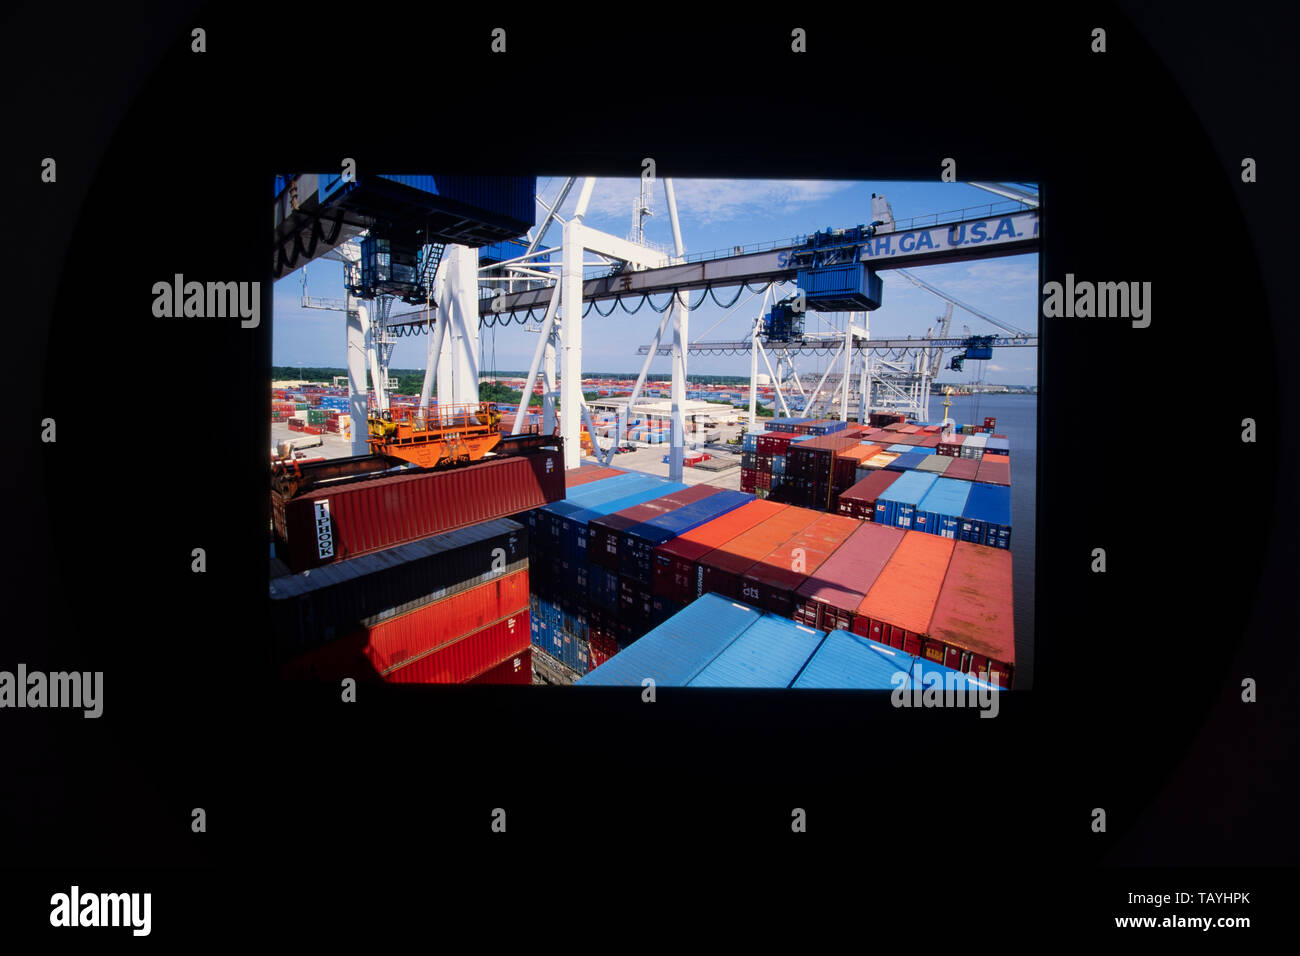 Chargement et déchargement de marchandises conteneurisées au port de Savannah, Géorgie Banque D'Images